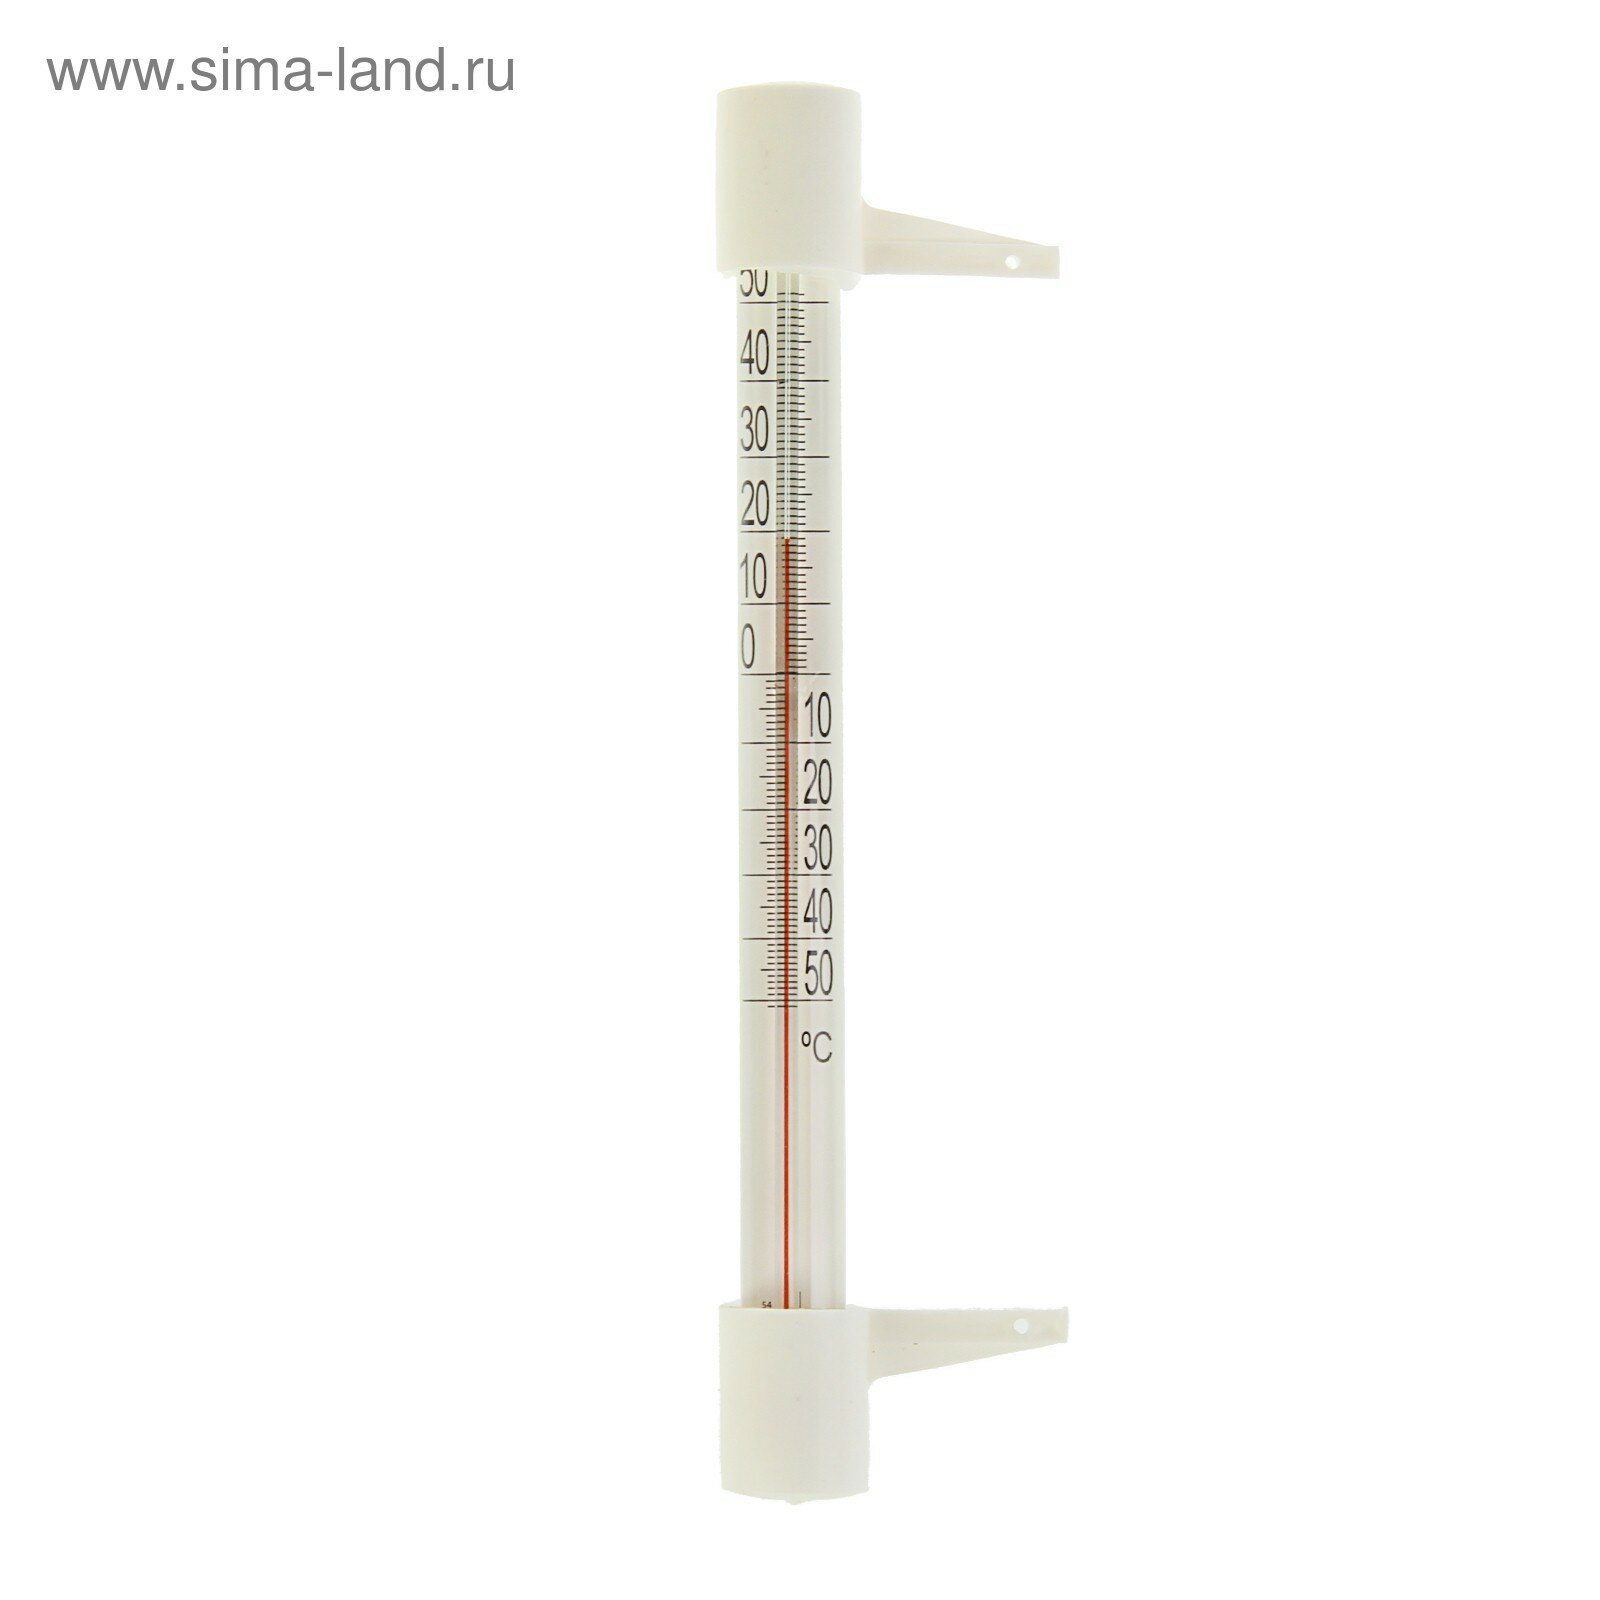 Термометр оконный ТБ-202 "Стандартный" (t -50 + 50 С) в пакете